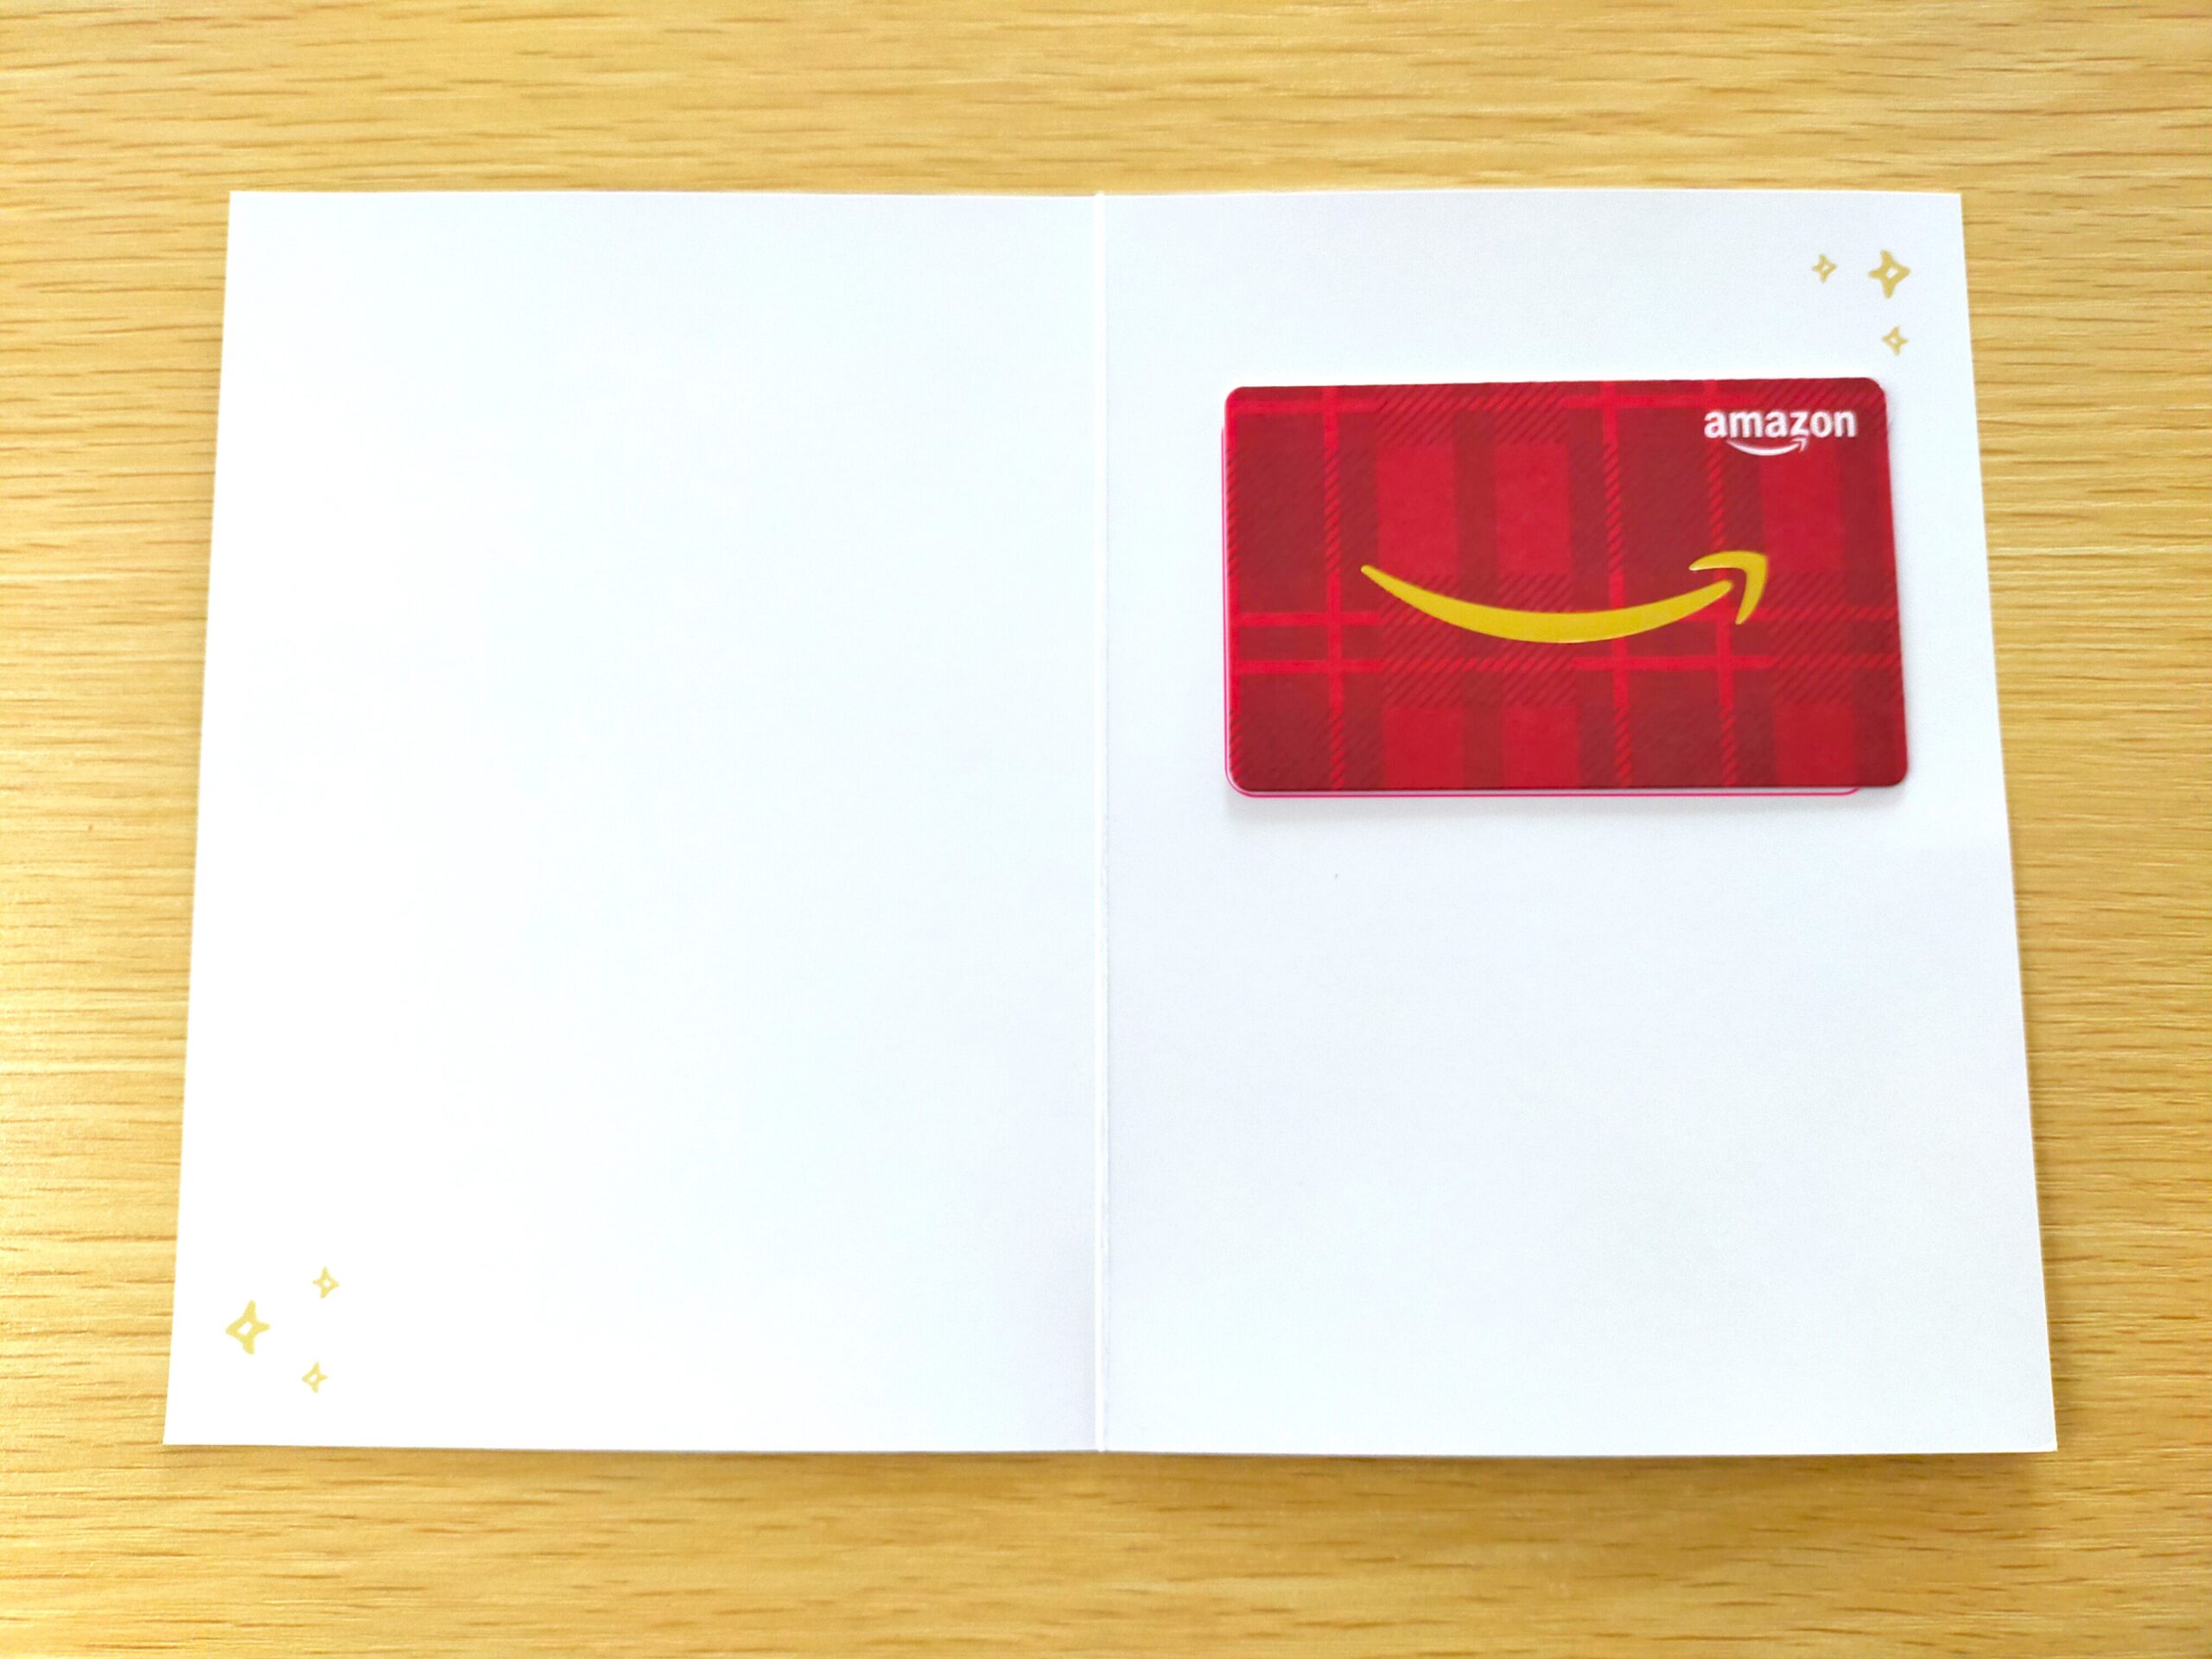 Amazonギフト券グリーティングカードタイプのサンタクロース